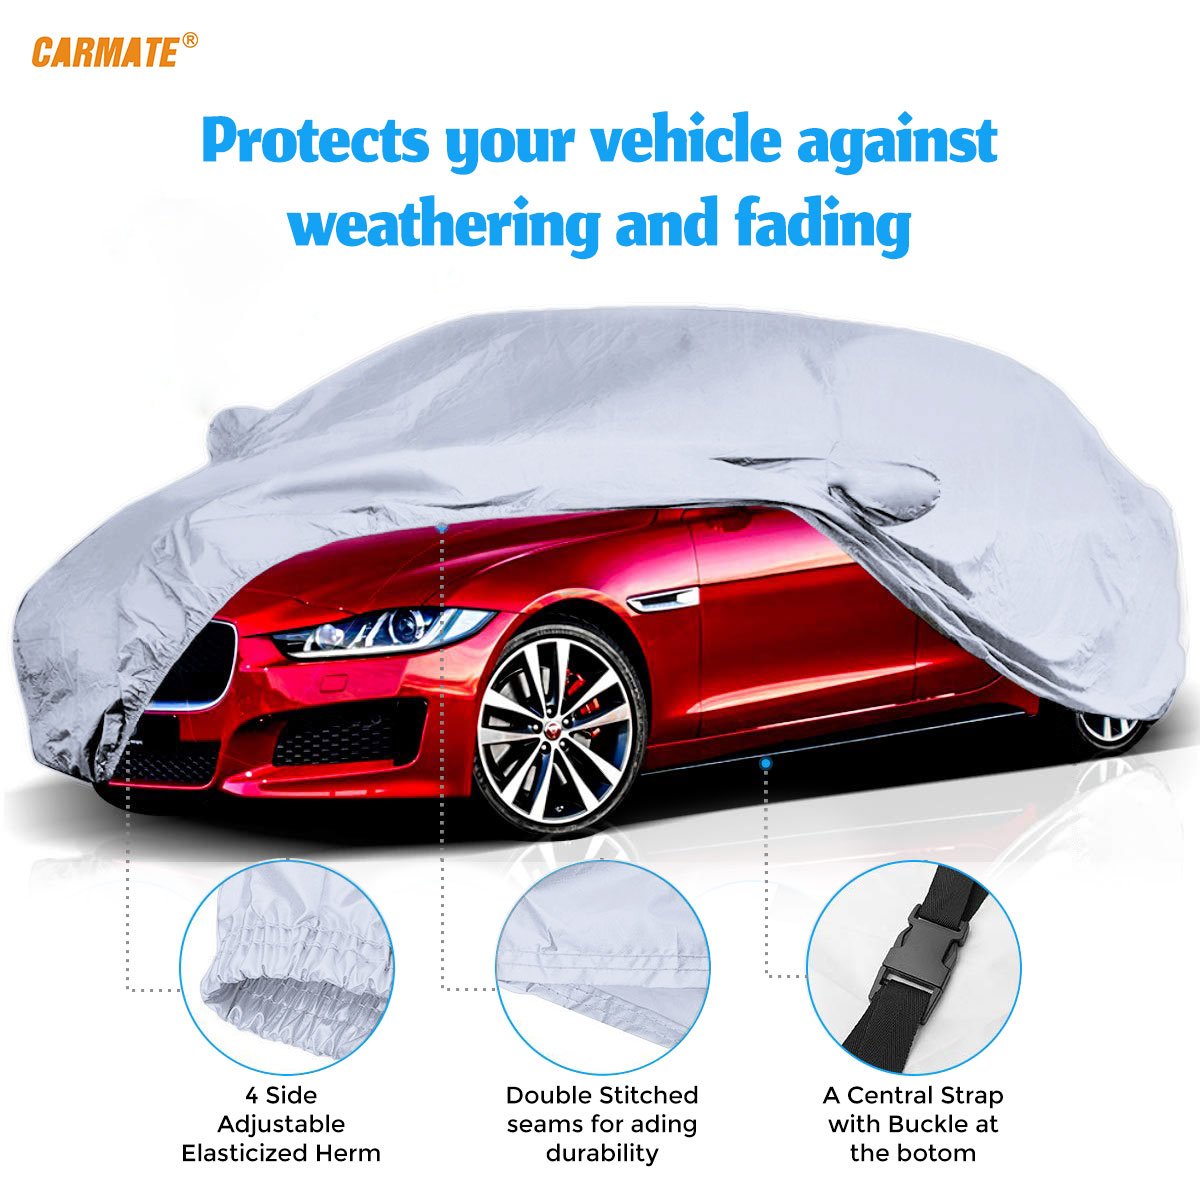 Carmate Premium Car Body Cover Silver Matty (Silver) for  Chevrolet - Tavera - CARMATE®